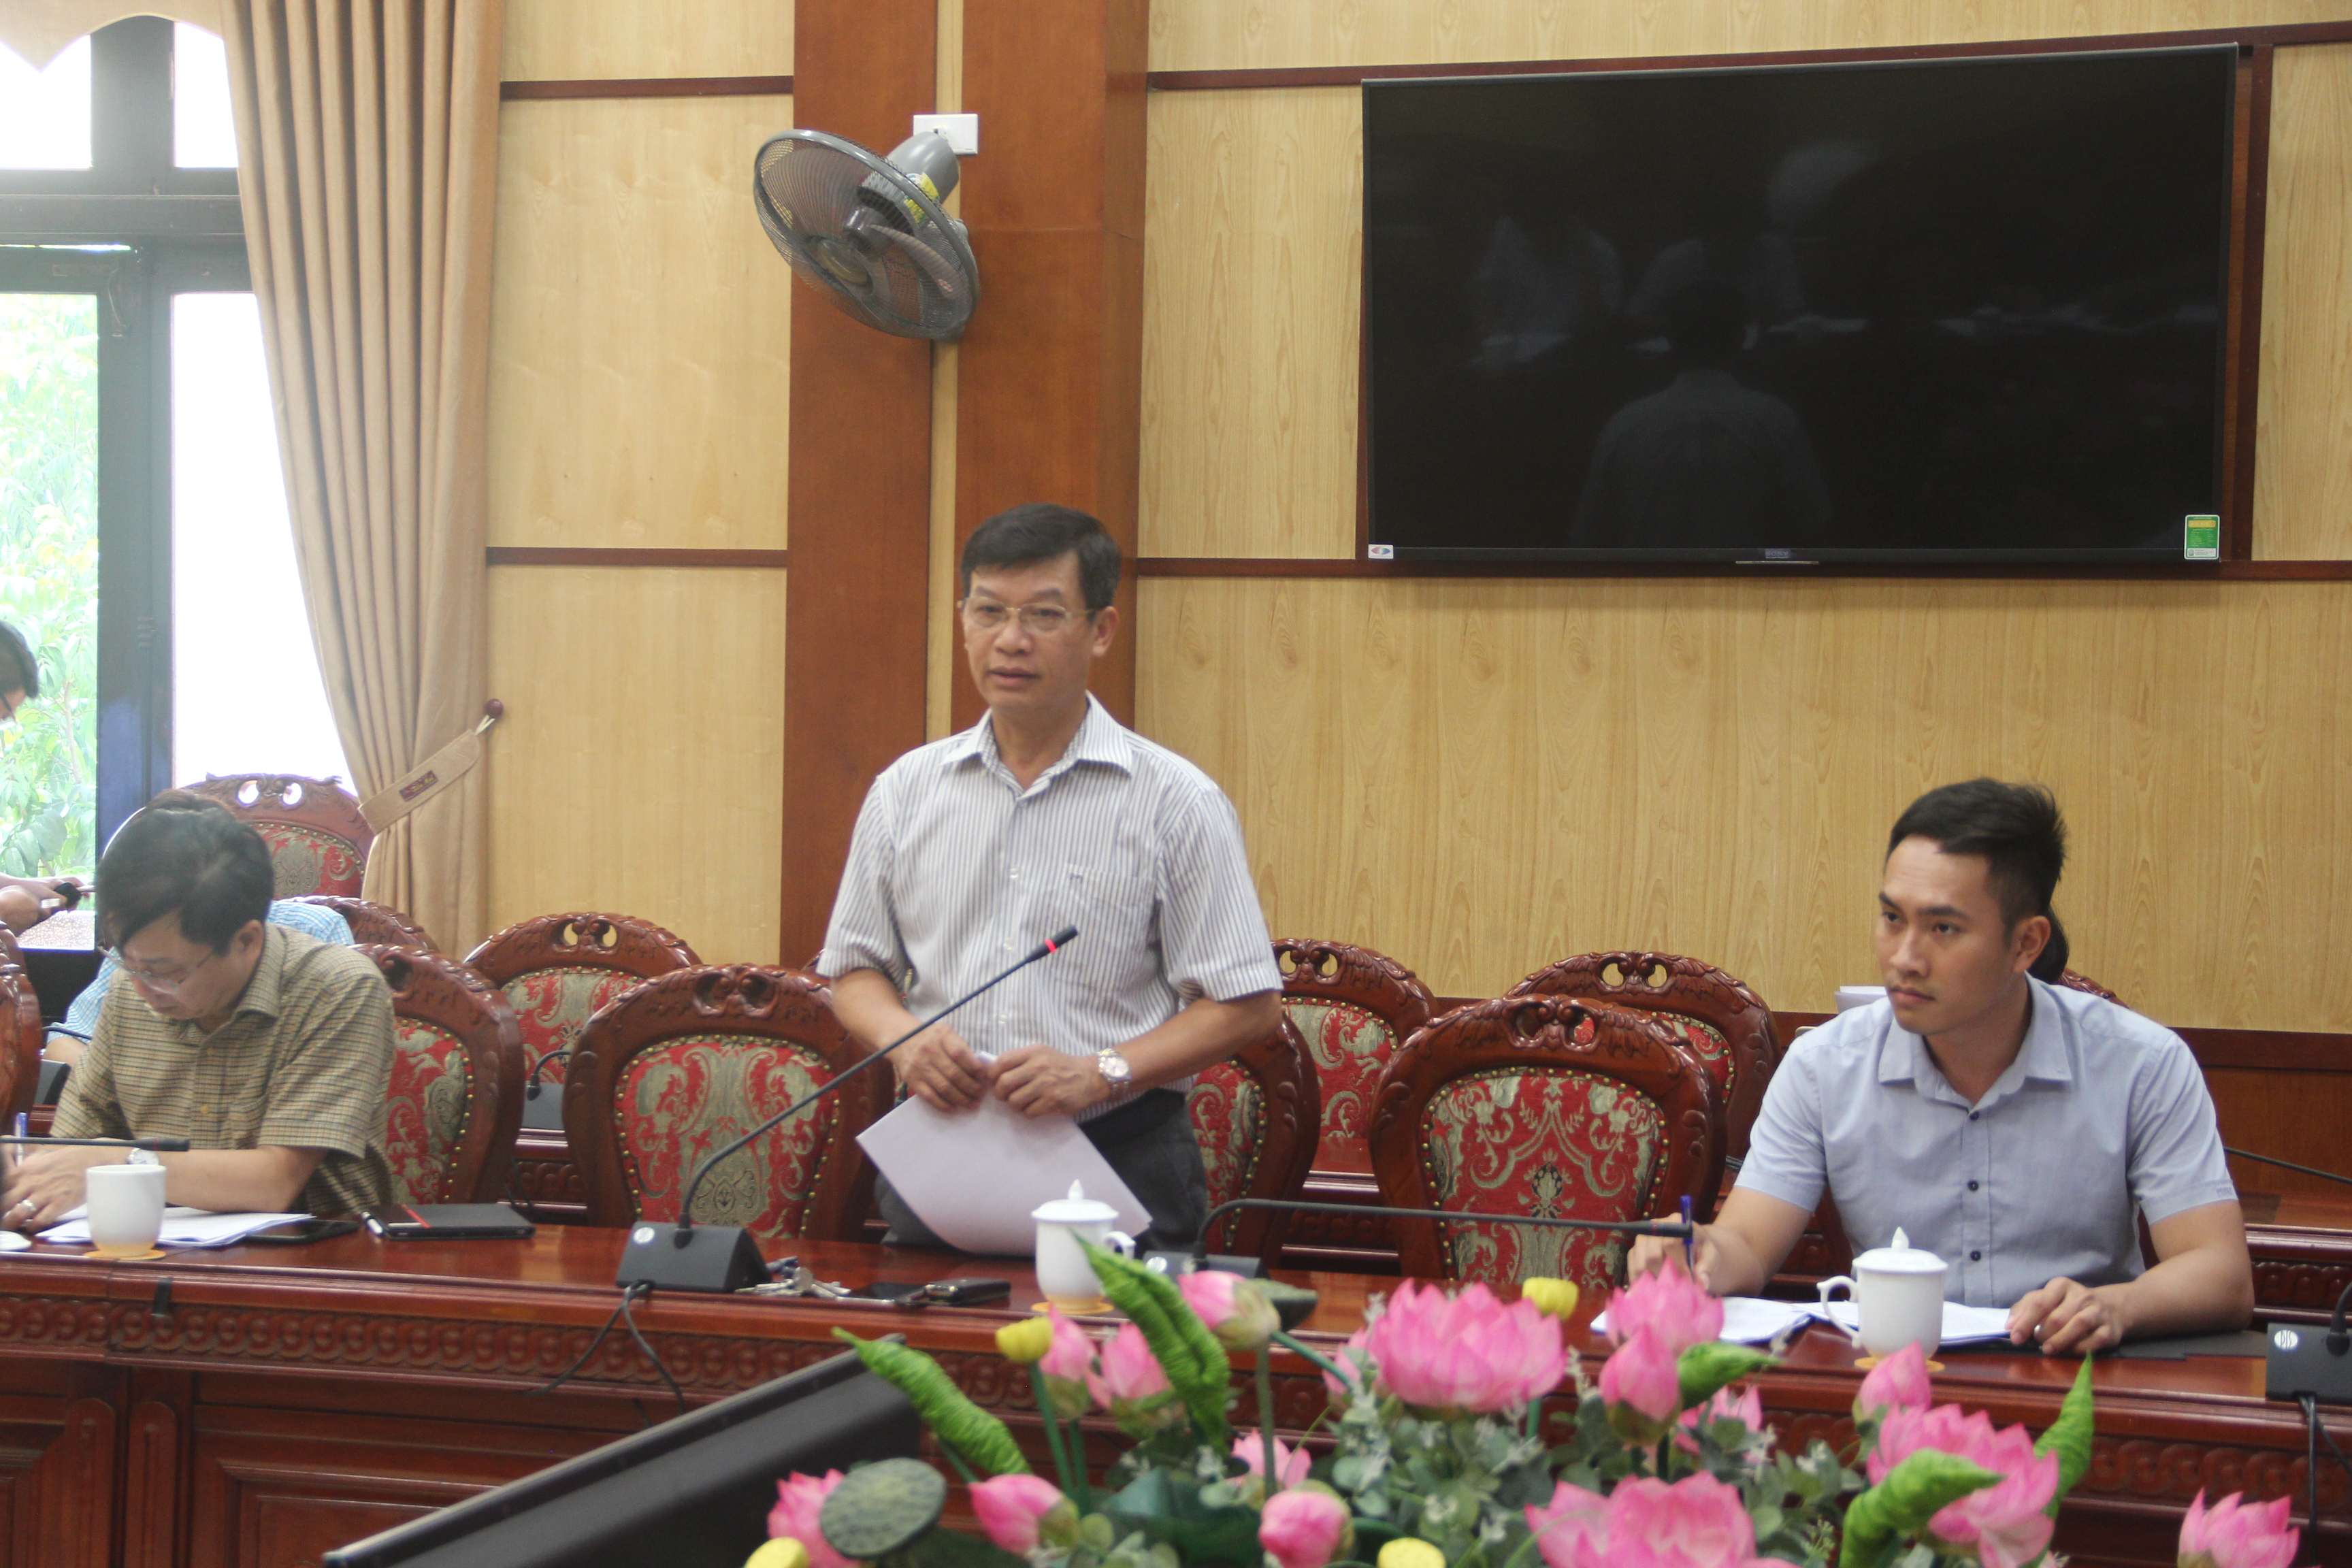 Hội nghị xúc tiến đầu tư tỉnh Thanh Hóa năm 2020 dự kiễn diễn ra ngày 12-6